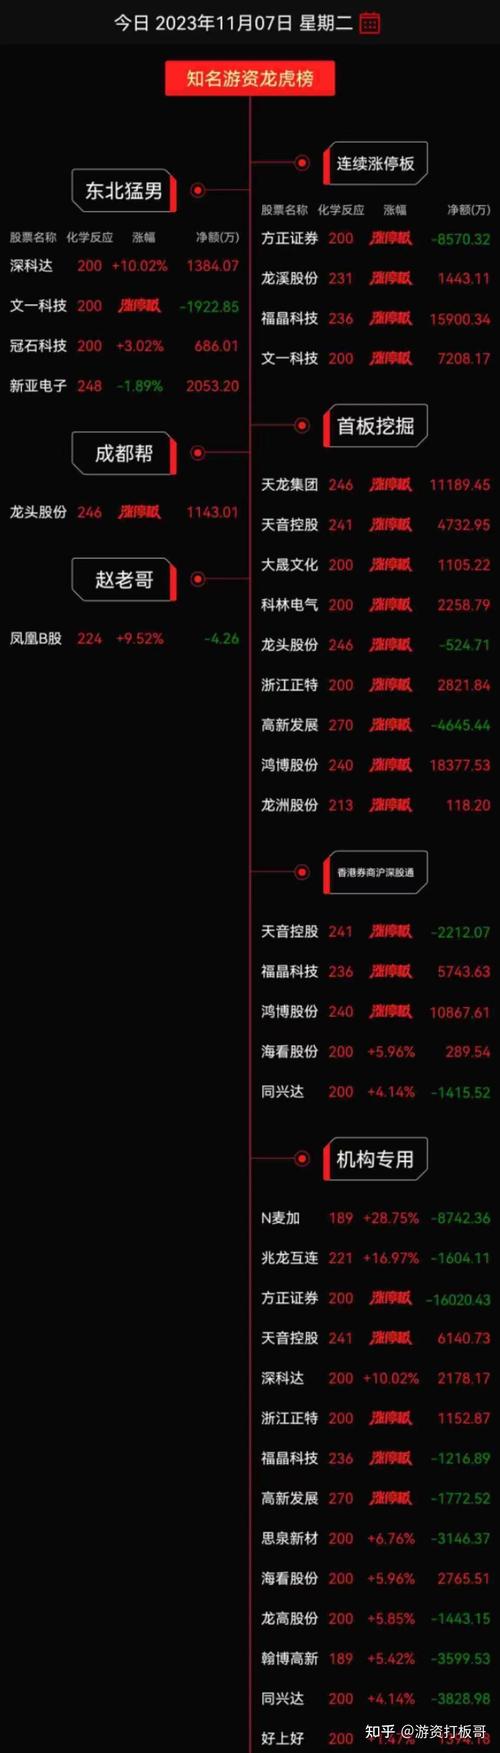 11月3日沪深两市涨停分析：天龙股份晋级8连板 朝阳科技走出5连板